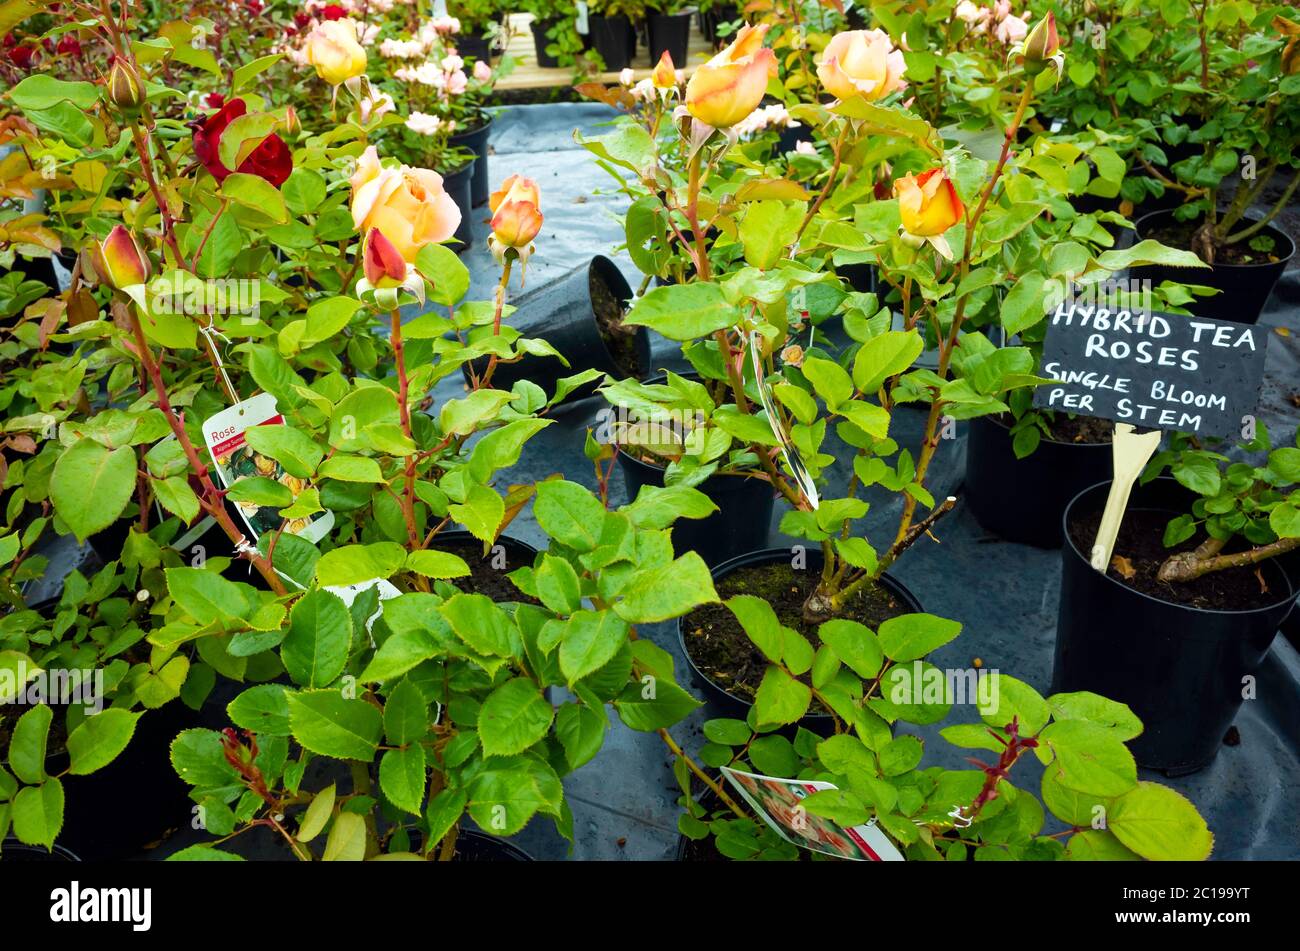 Hybrid Tea Rose Pflanzen mit einer einzigen Blume auf jedem Stamm in einem Garten Zentrum Stockfoto